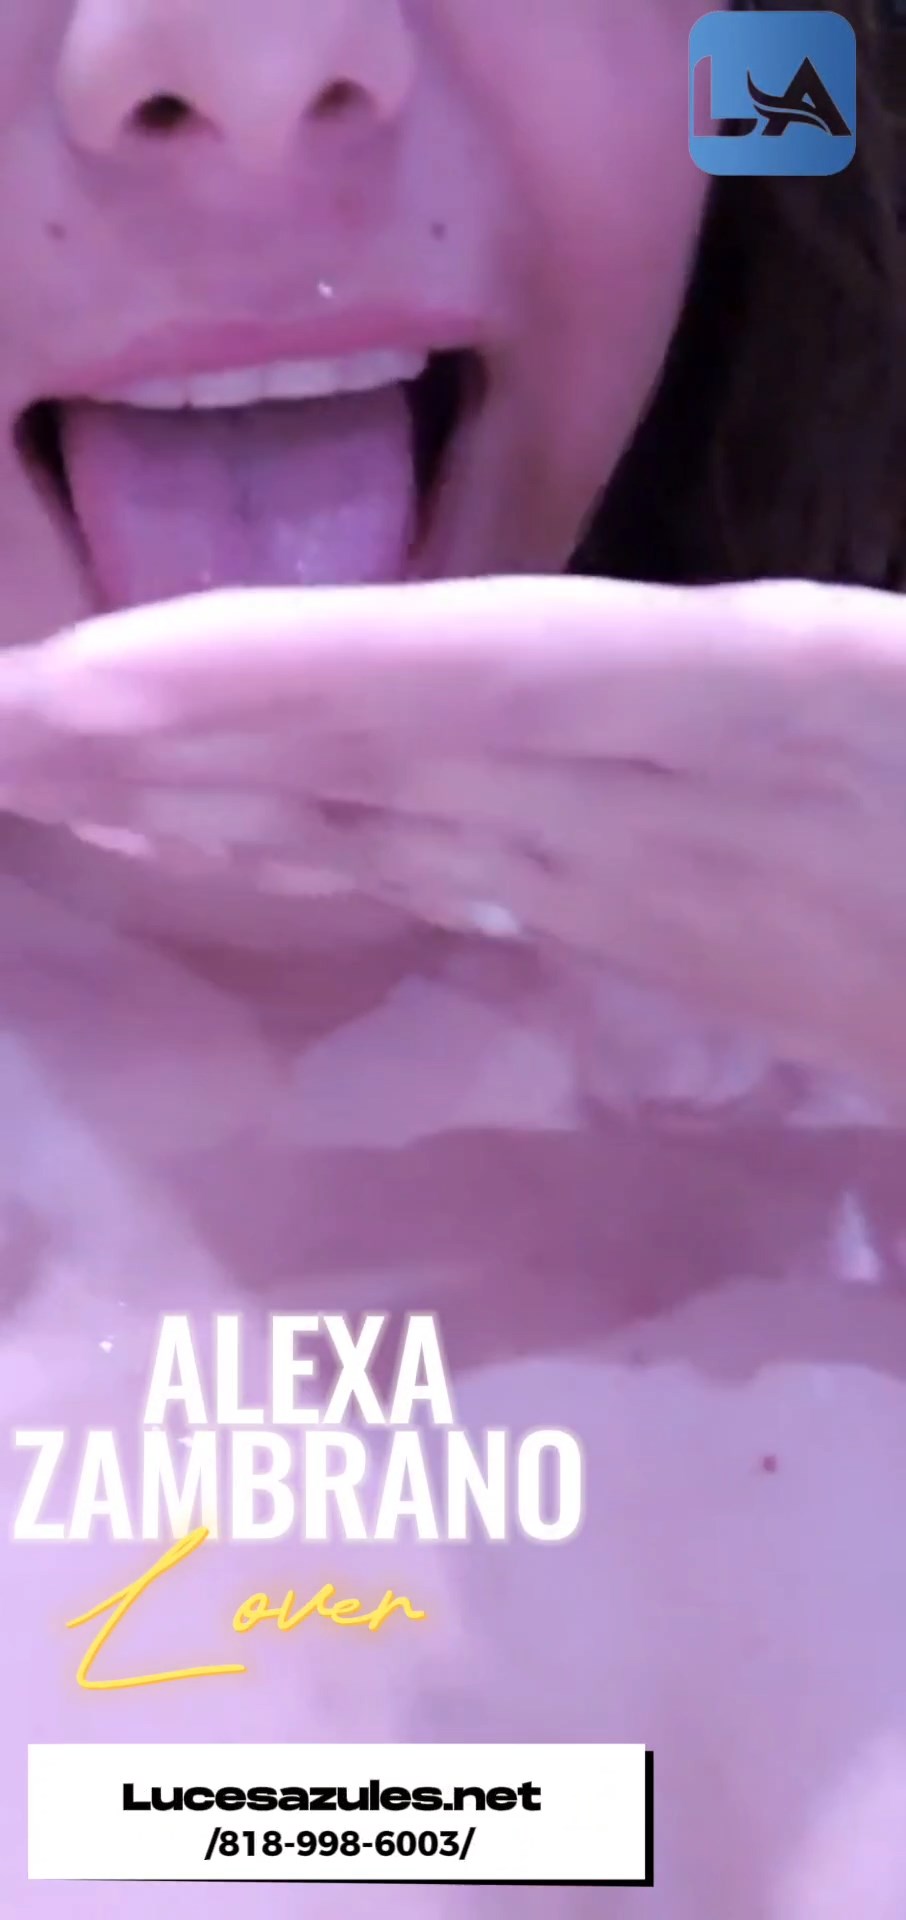 Alexa - Disfrutando la lechita